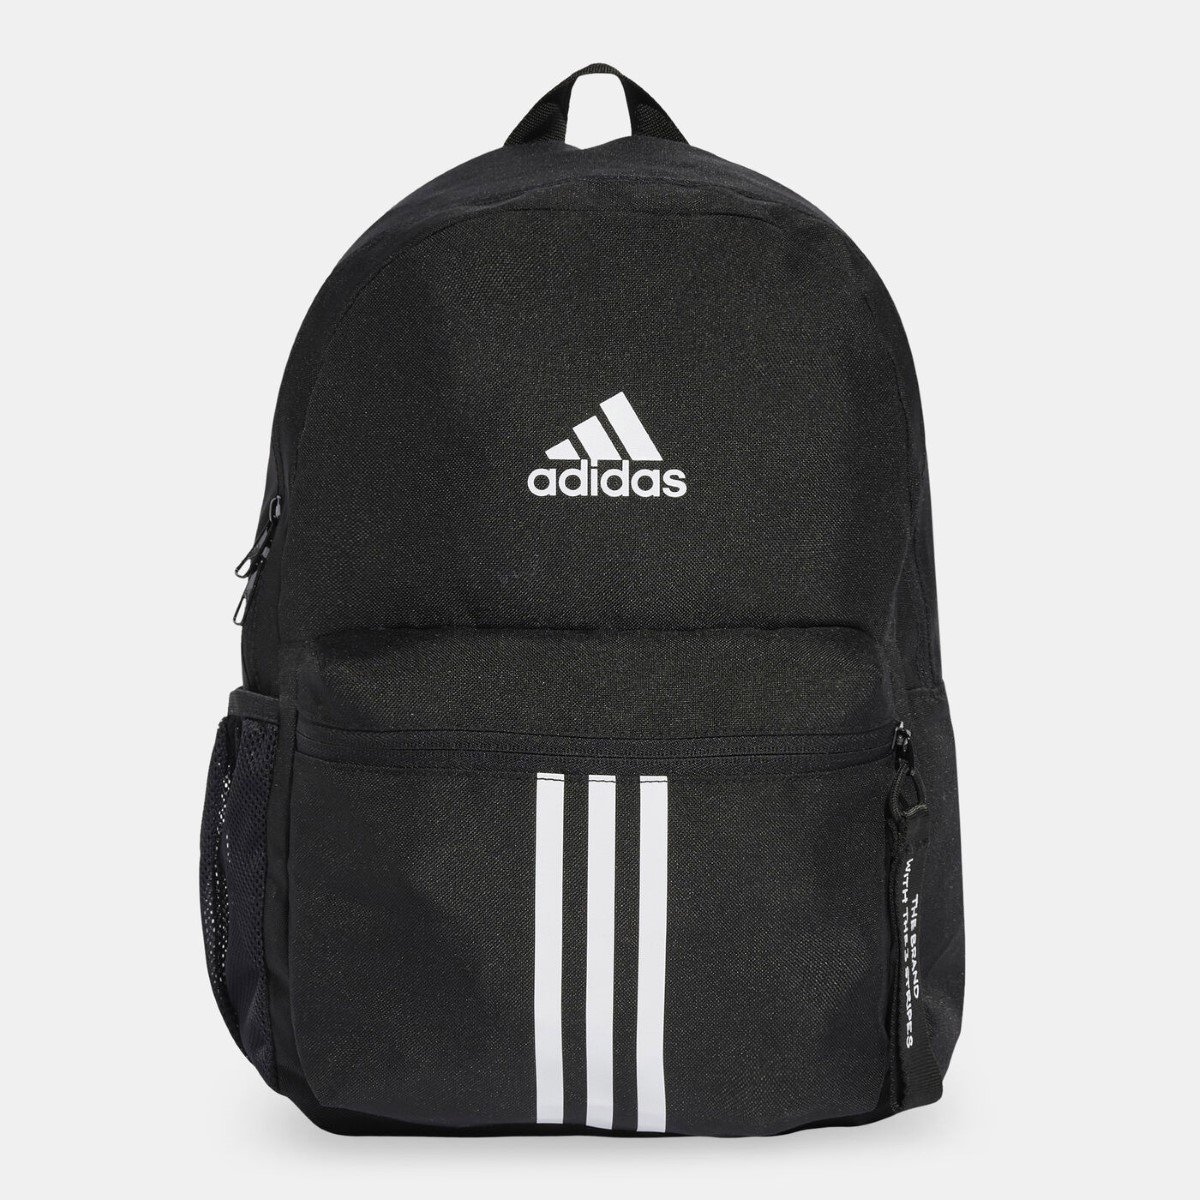 Adidas, Plecak sportowy Street Jam (20L), IW1107, Czarny